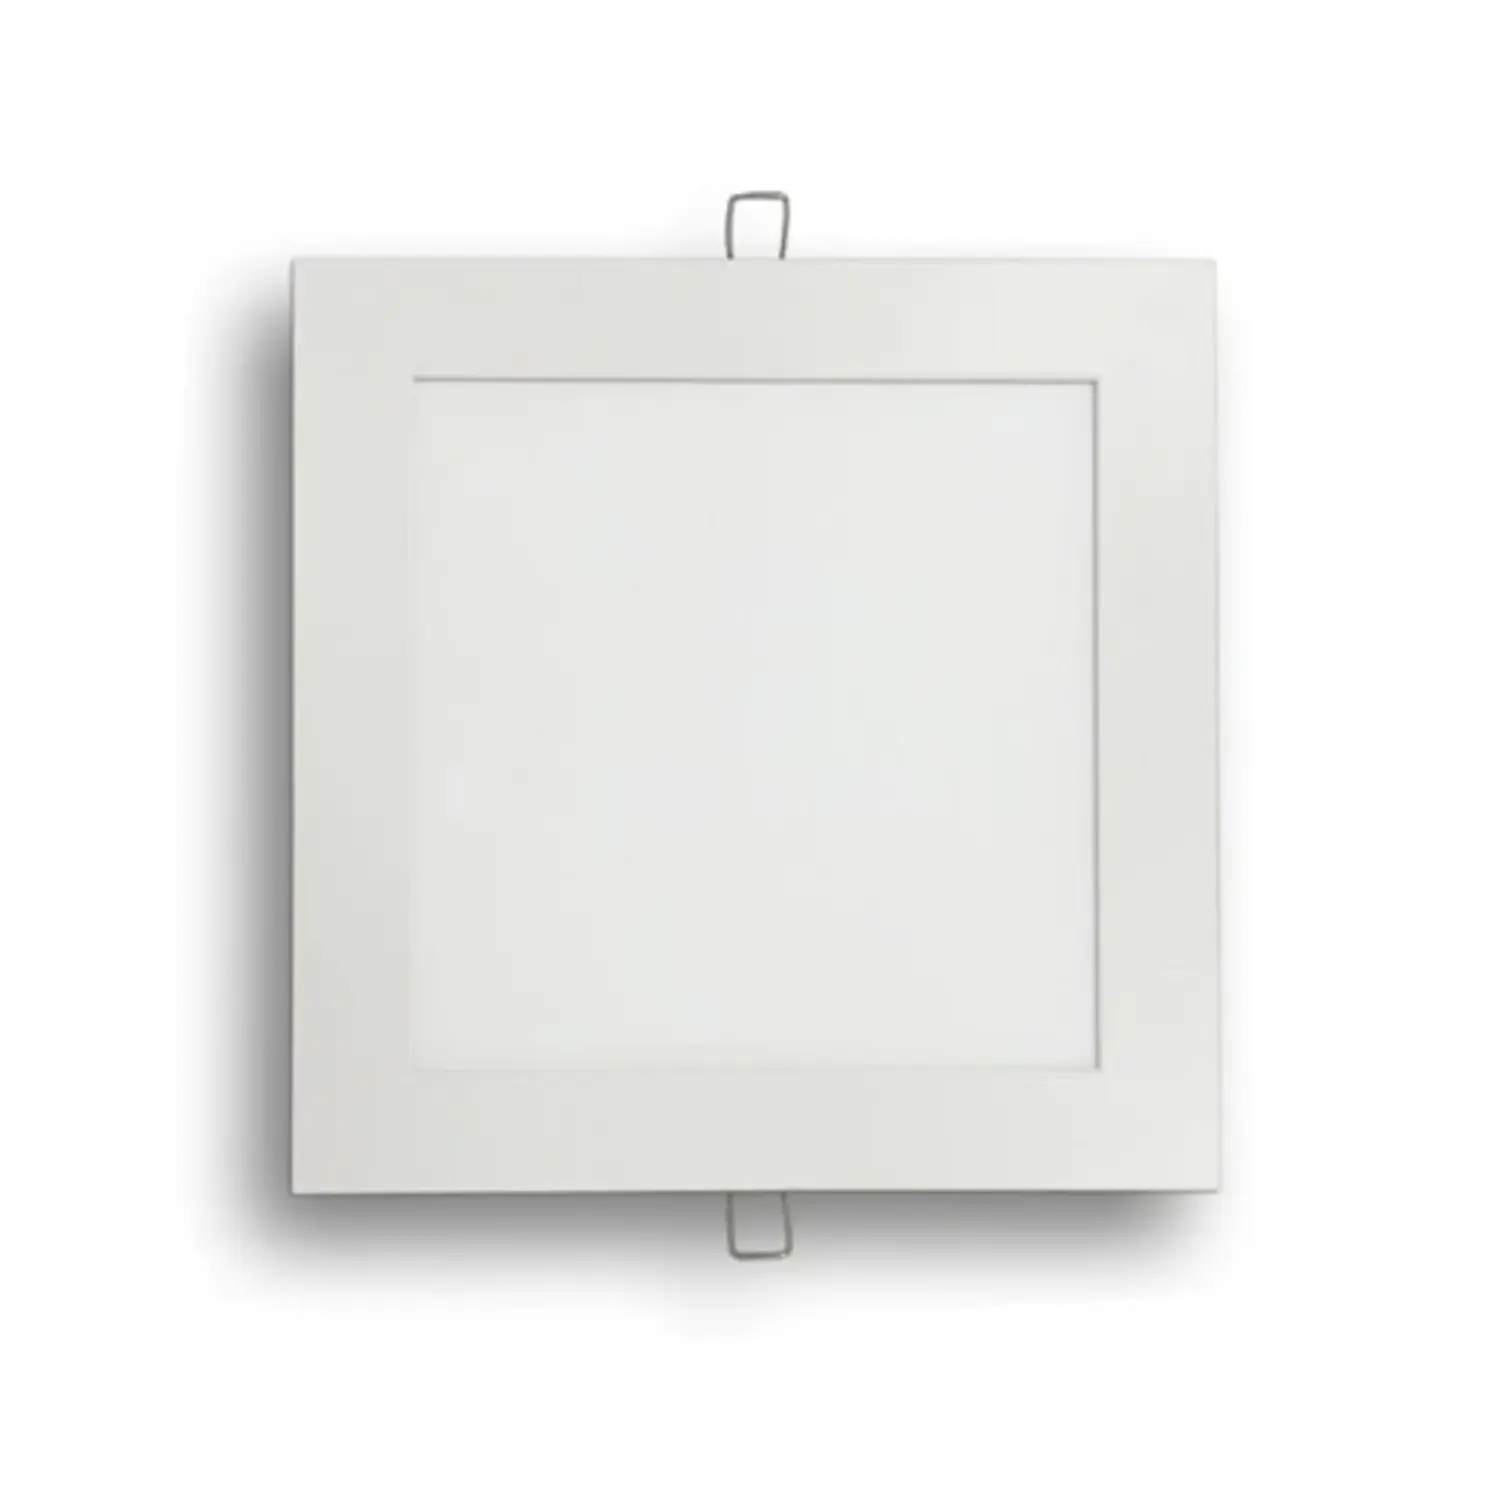 immagine del prodotto pannello led slim faretto incasso 3 watt bianco naturale quadrato